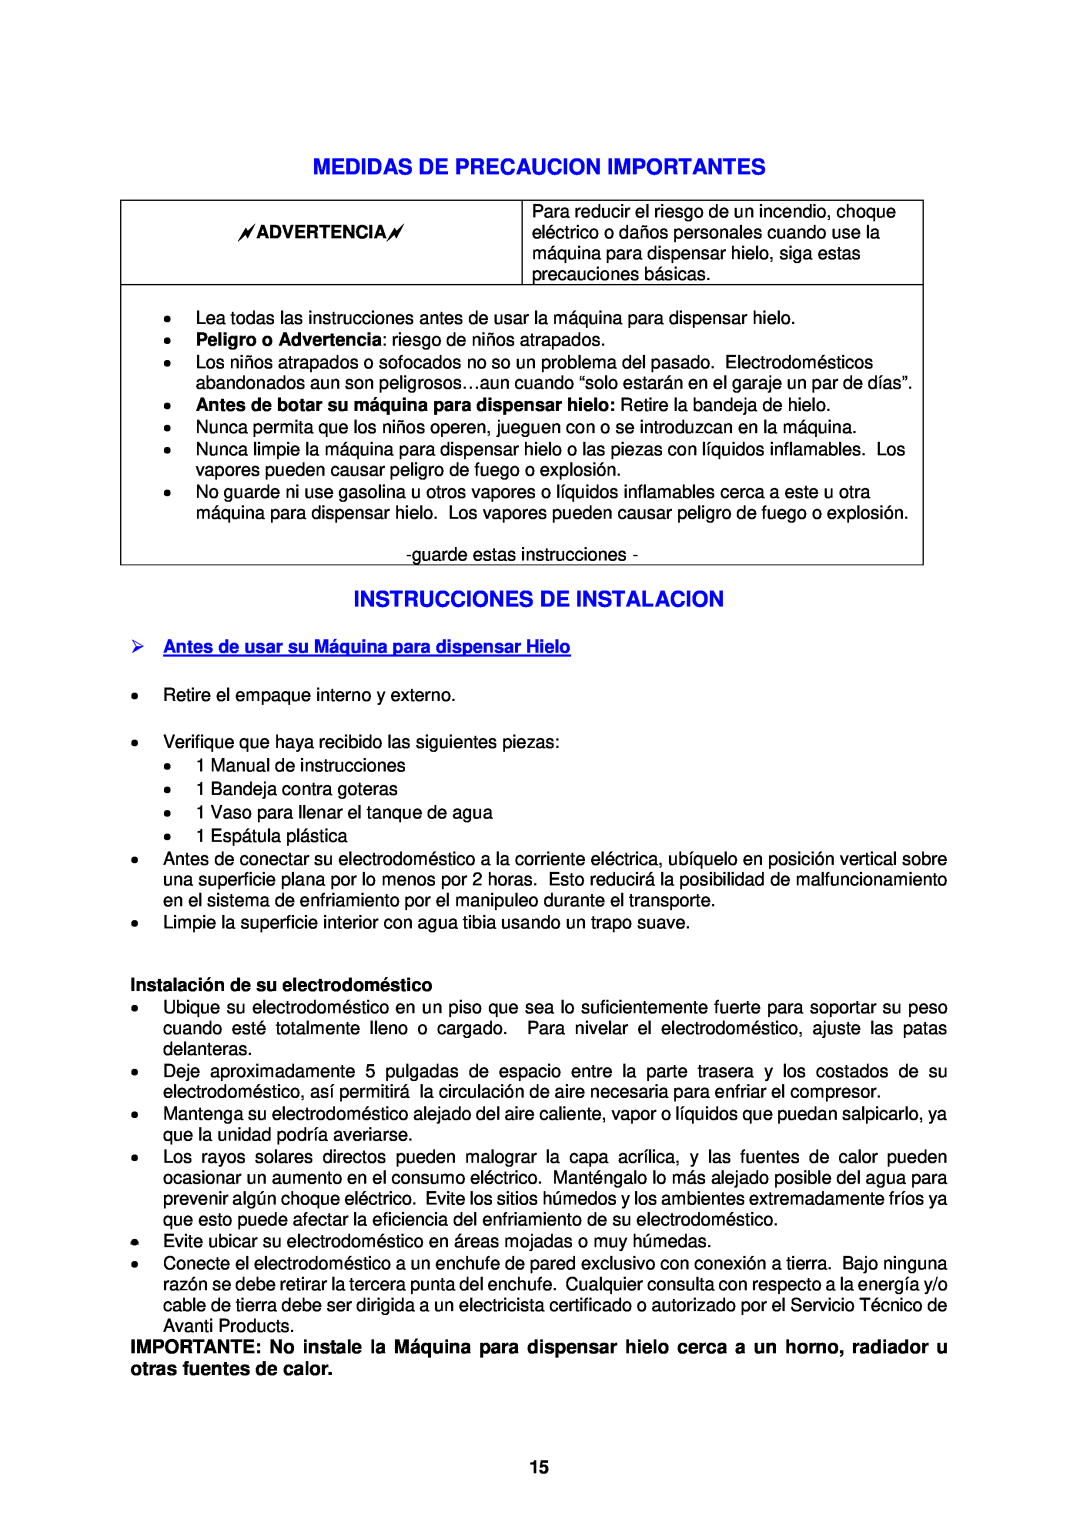 Avanti WIMD332PC-IS instruction manual Medidas De Precaucion Importantes, Instrucciones De Instalacion, Advertencia 